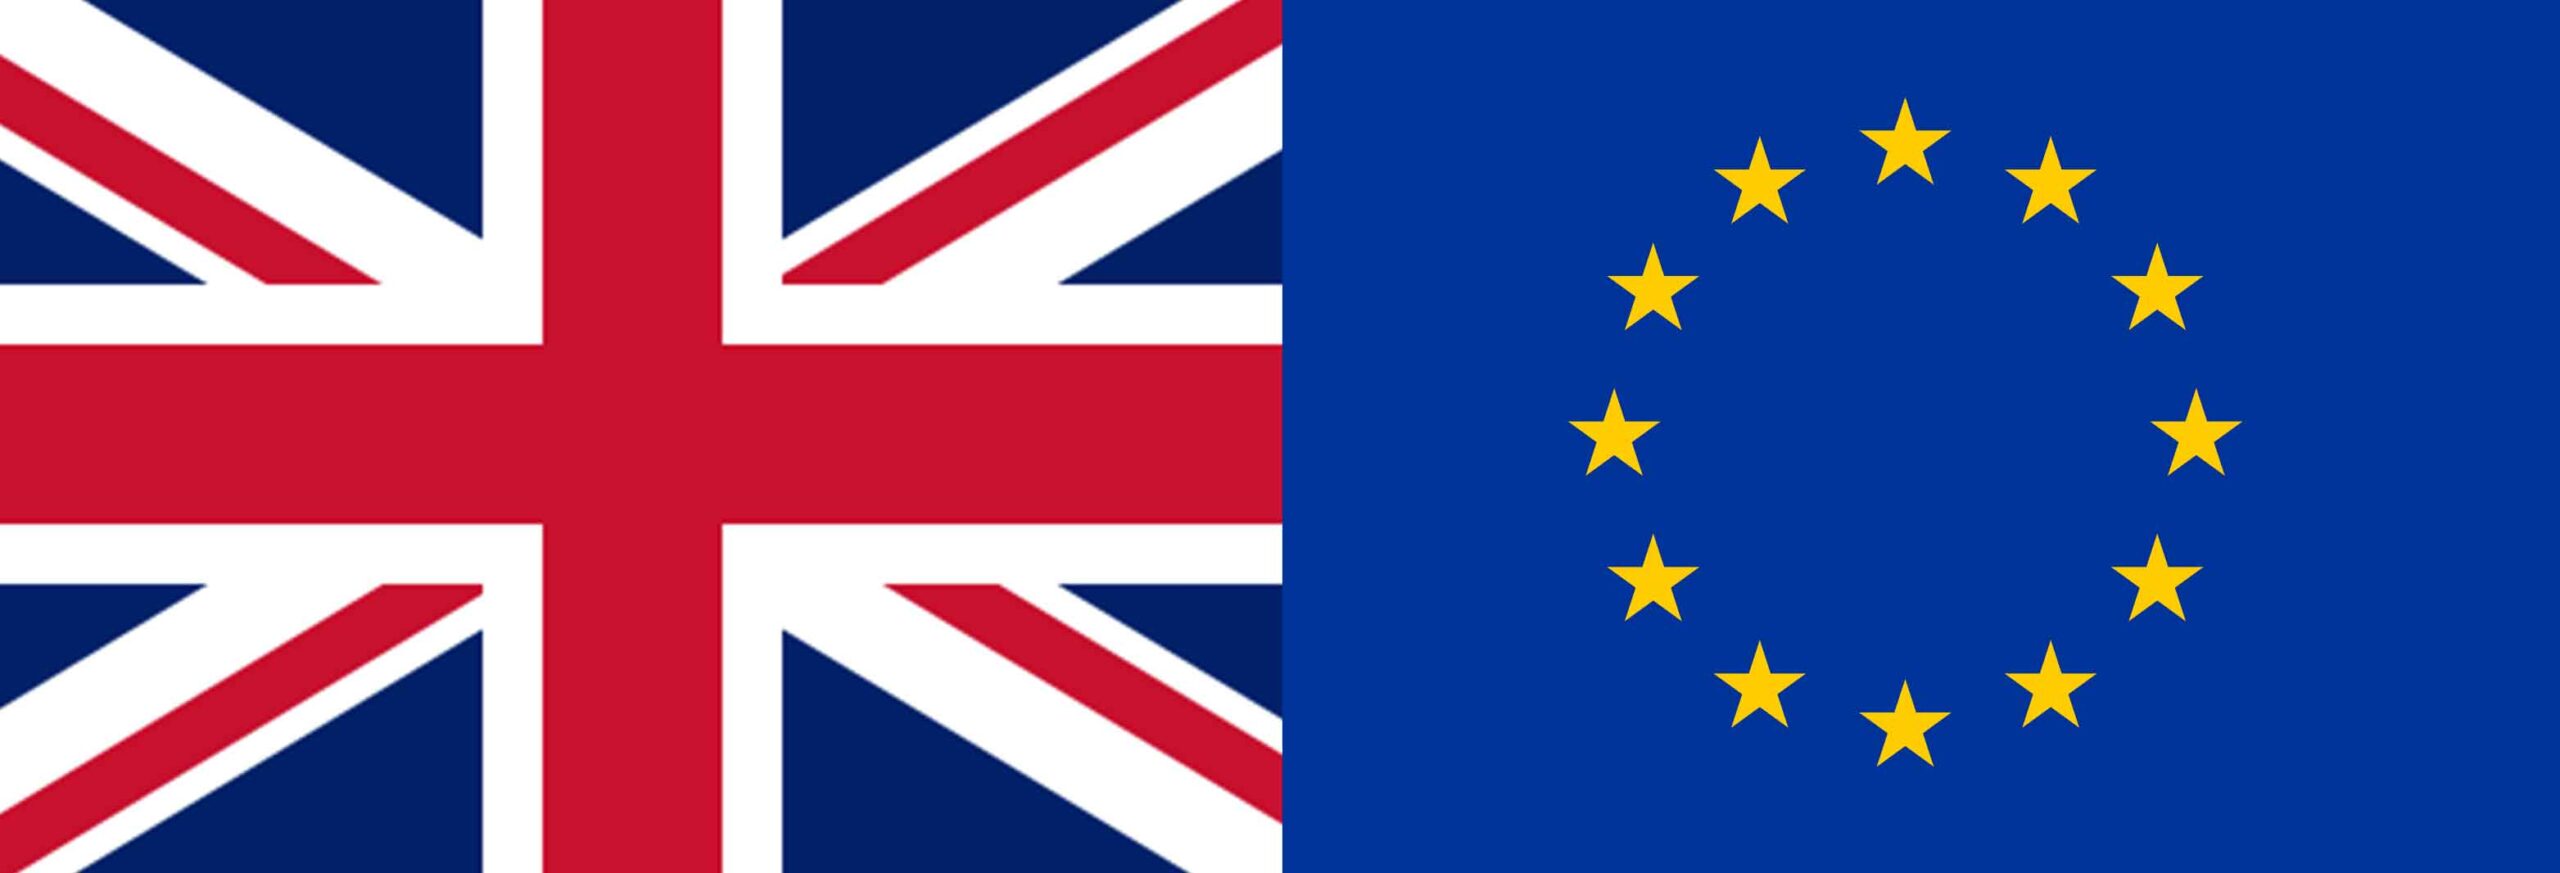 BPL UK & EU